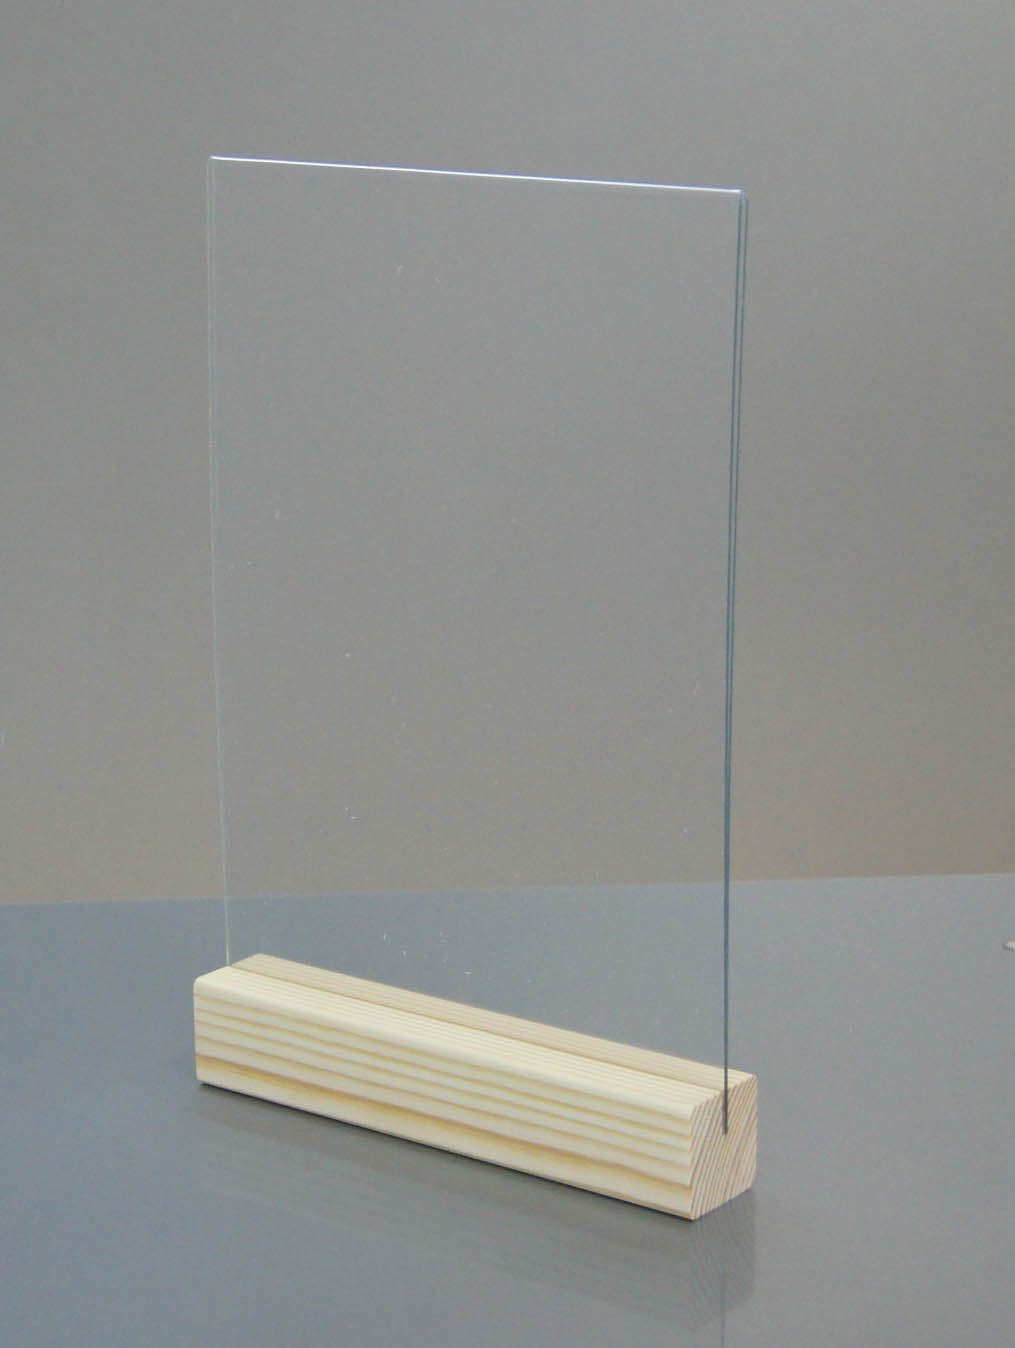 Фото товара: Двусторонний тейбл тент с деревянным основанием А4, арт. 141354